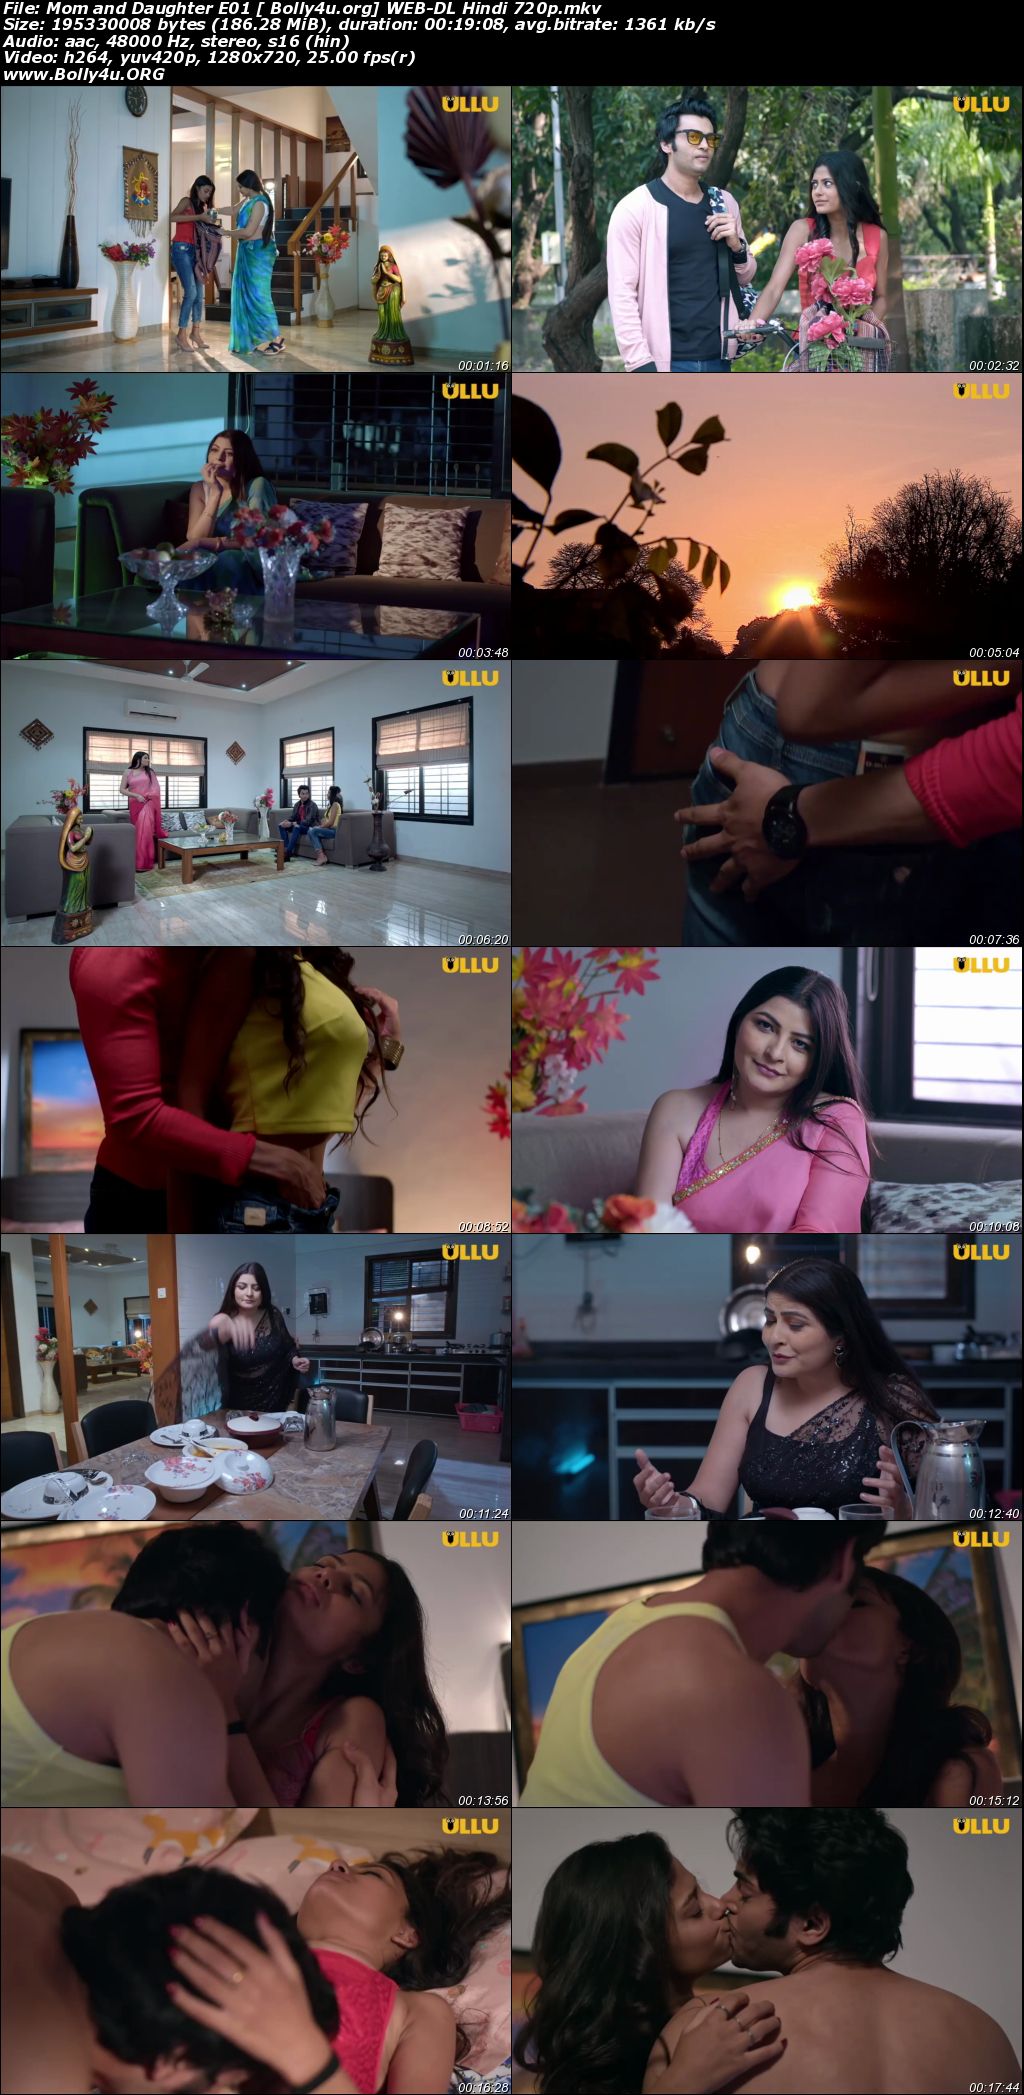 Palang Tod (Mom and Daughter) 2020 WEB-DL Hindi S01 720p download